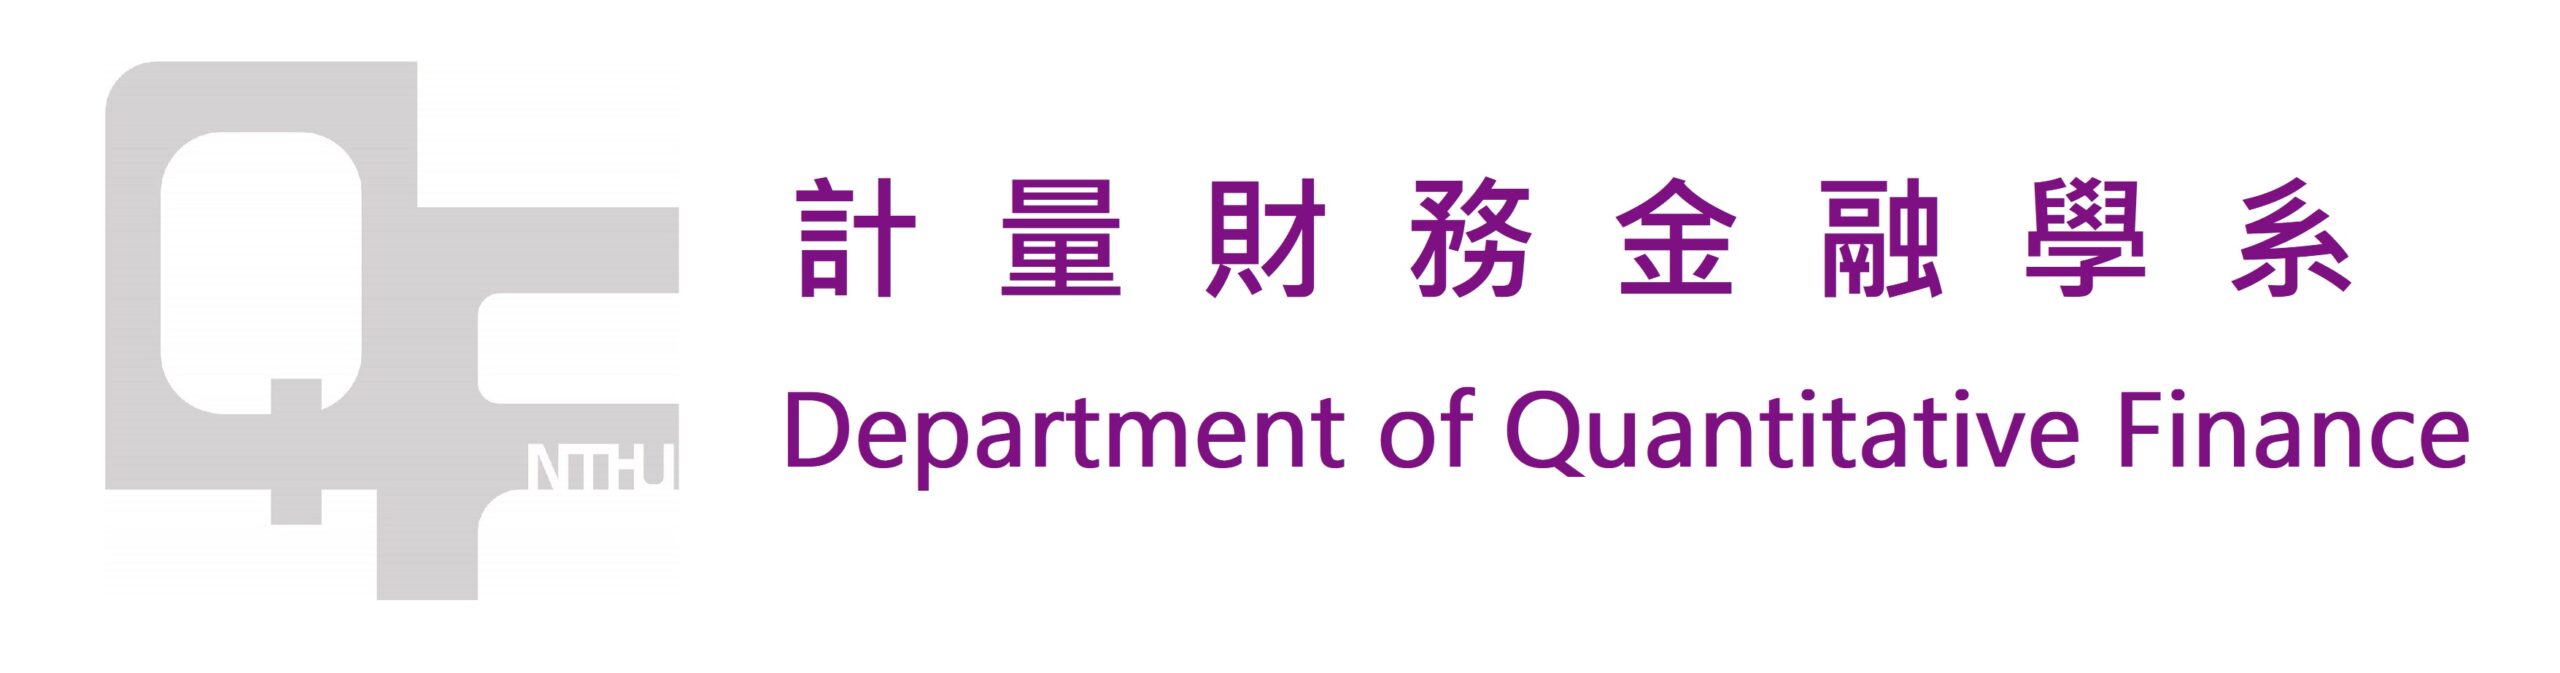 Department of Quantitative Finance